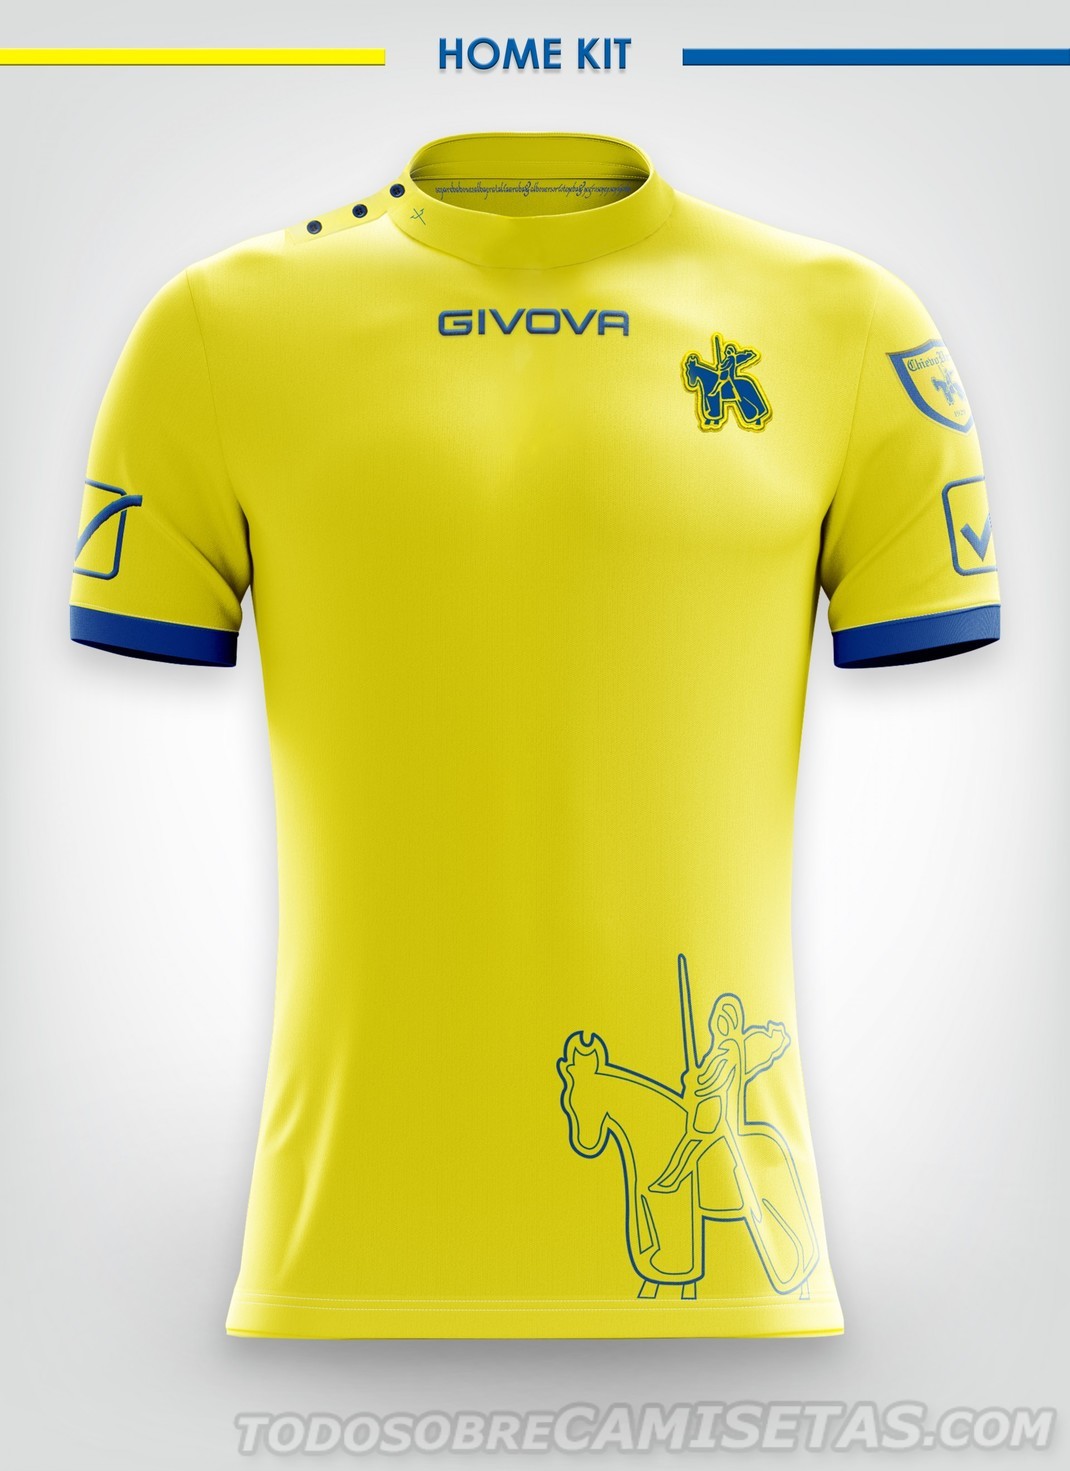 Chievo Verona Givova Kits 2018-19